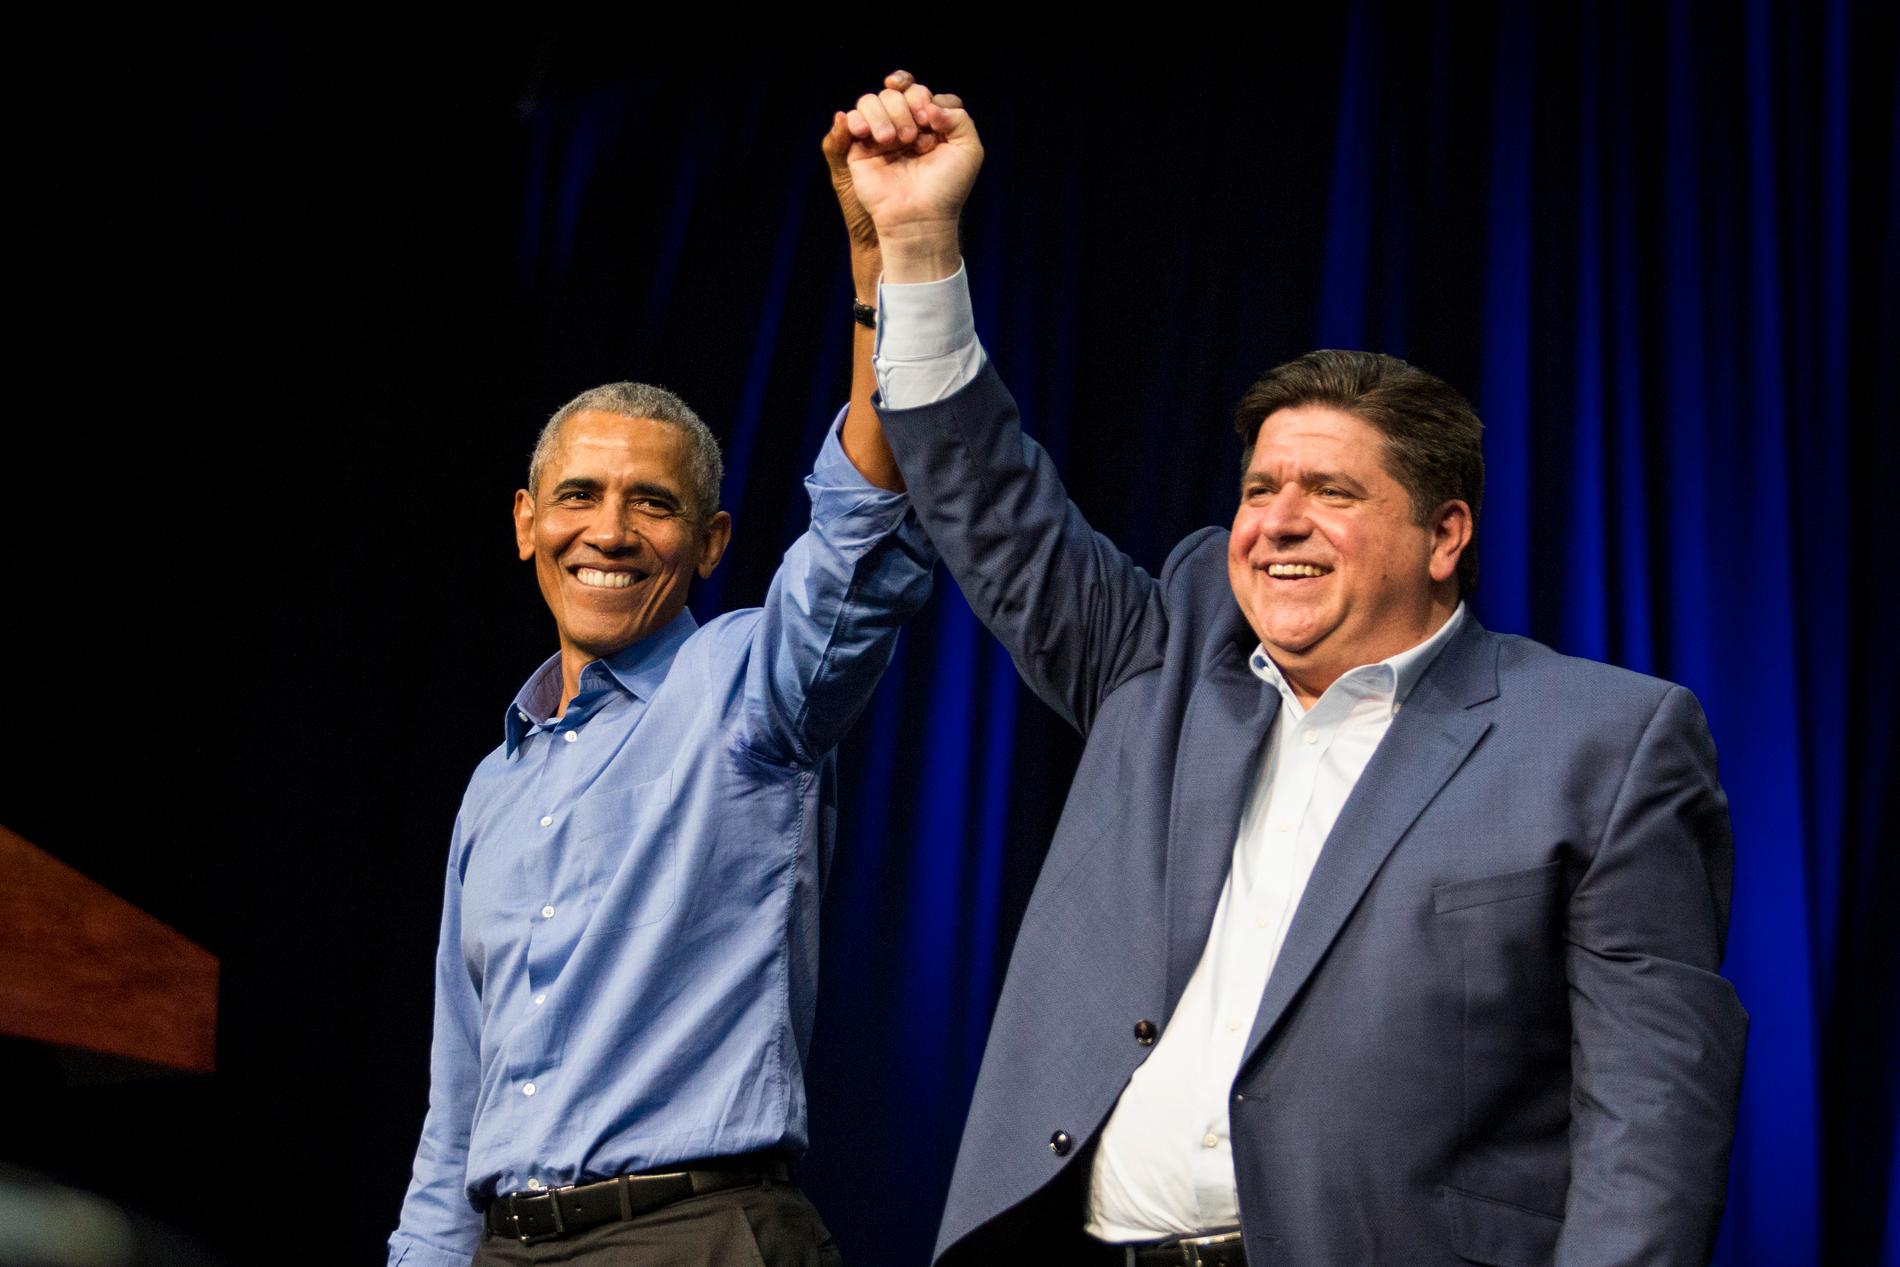 Den demokratiske expresidenten Barack Obama kampanjar för partiets kandidat till guvernörsposten i Illinois, J B Pritzker.